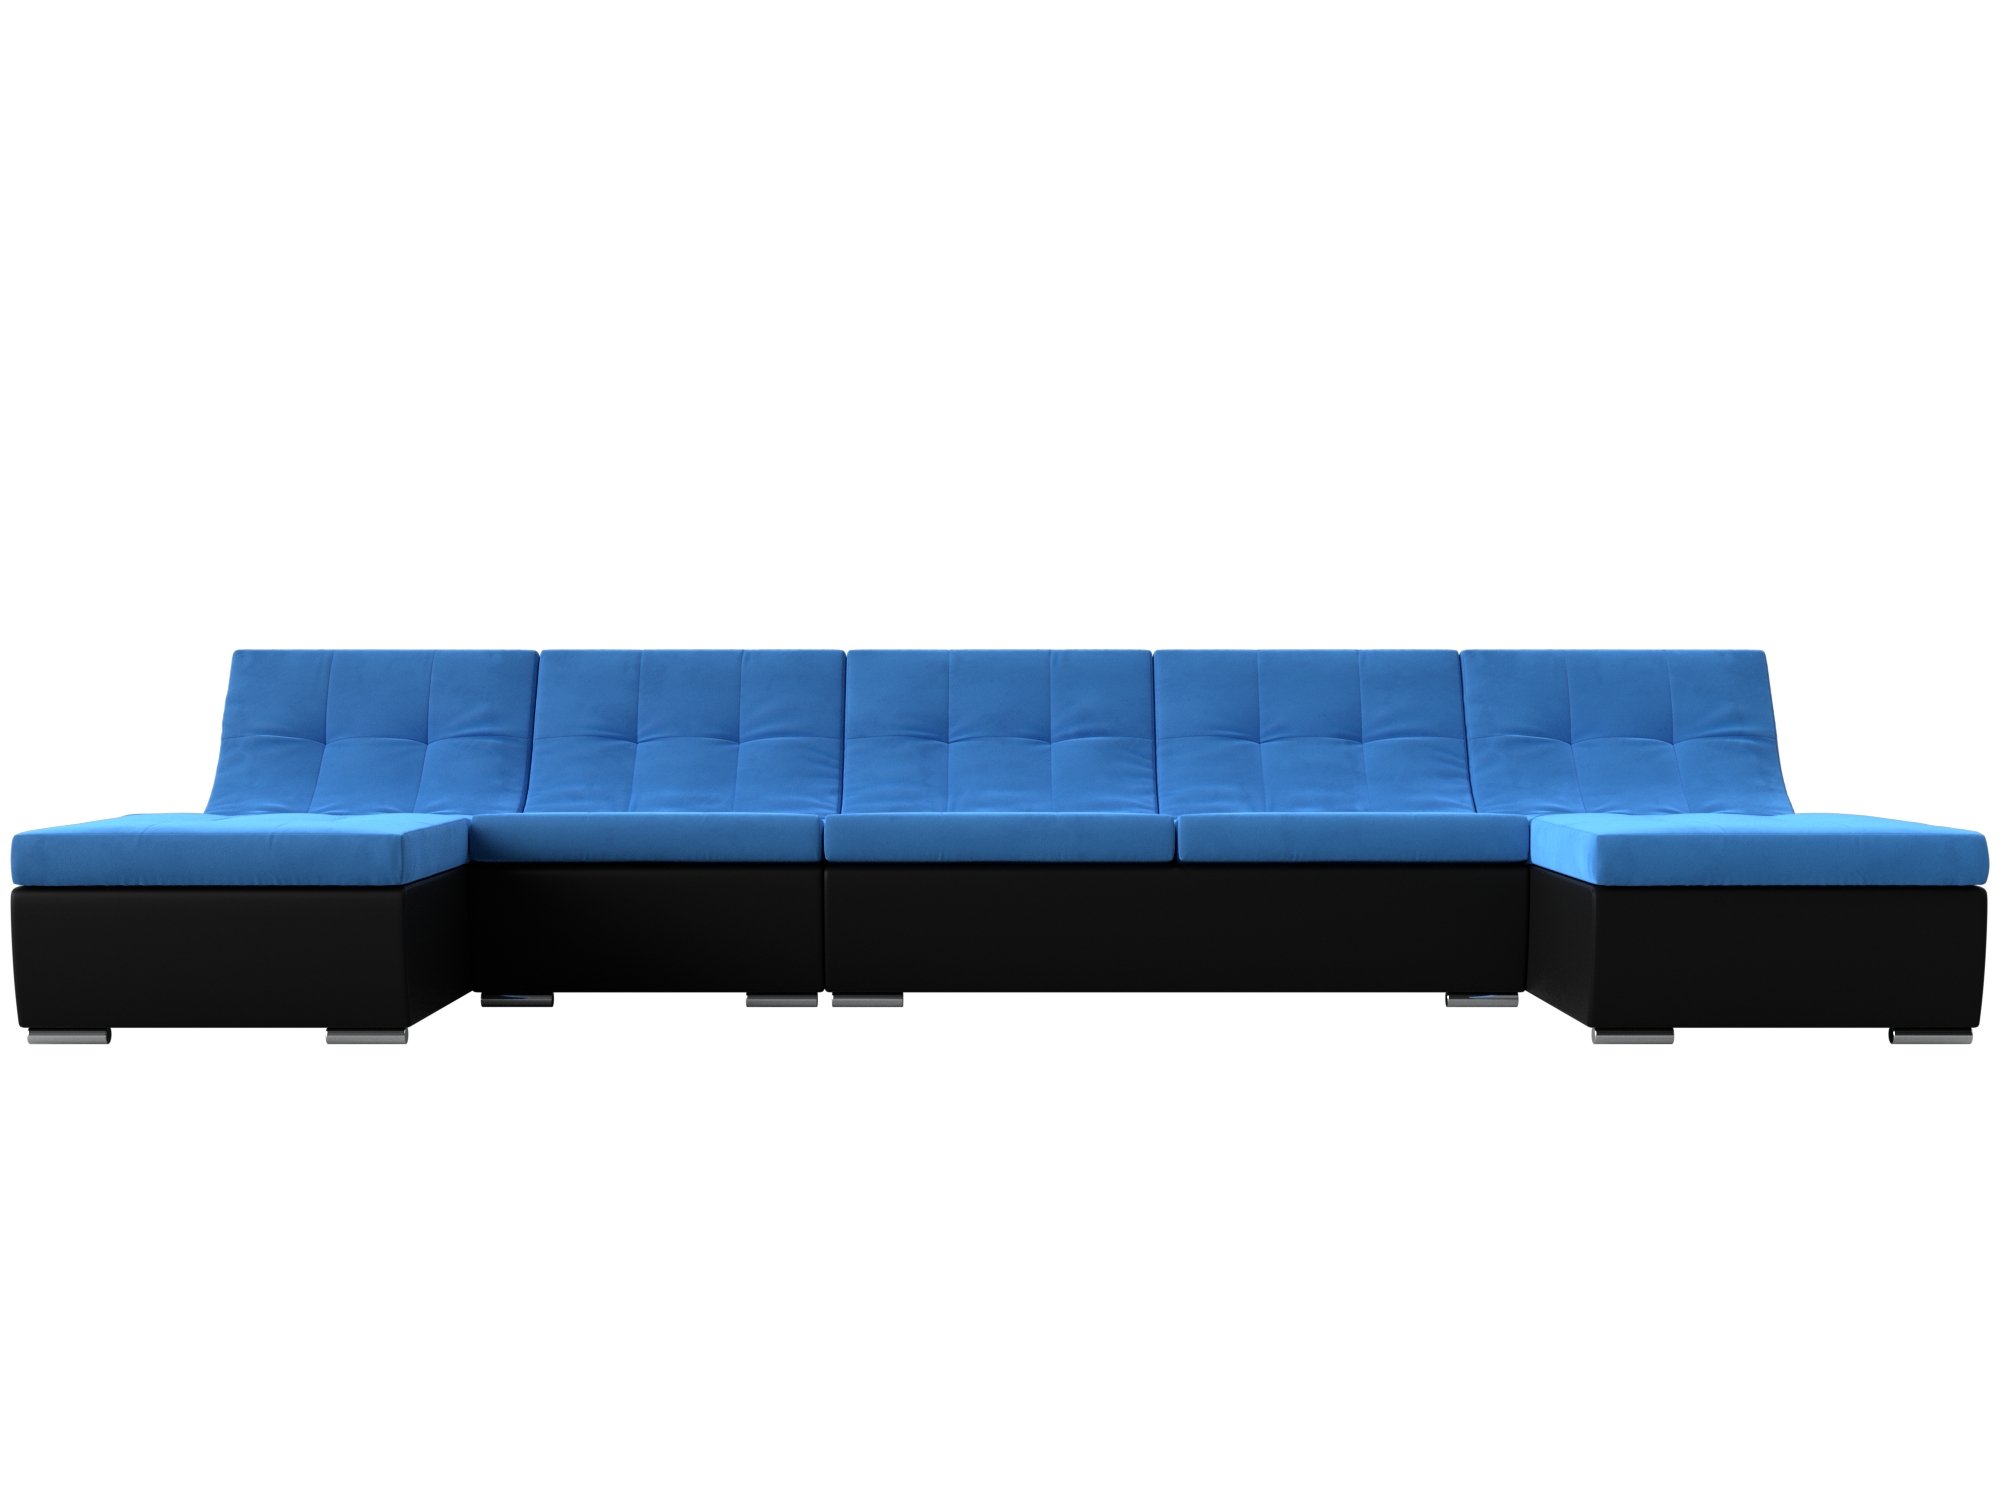 П-образный модульный диван Монреаль Long MebelVia Голубой, Черный, Велюр, Экокожа, ЛДСП п образный модульный диван монреаль mebelvia голубой черный велюр экокожа лдсп